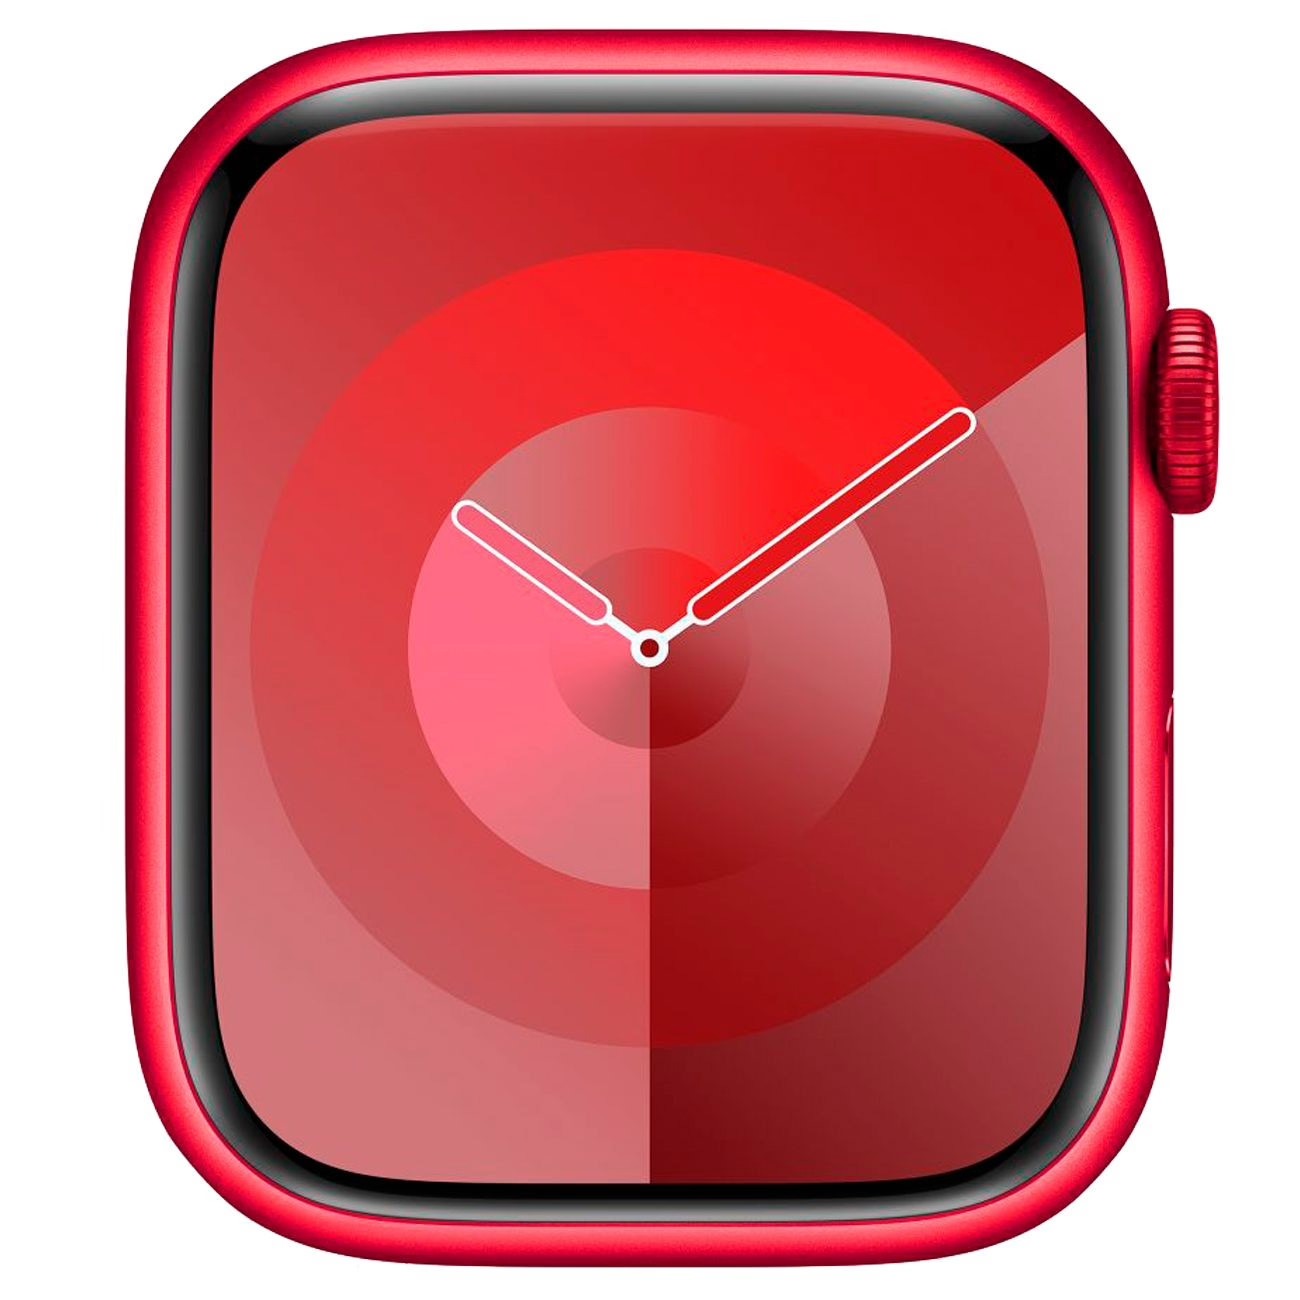 Купить смарт-часы apple watch s9 41mm red Apple Watch 9 в официальном магазине Apple, Samsung, Xiaomi. iPixel.ru Купить, заказ, кредит, рассрочка, отзывы,  характеристики, цена,  фотографии, в подарок.